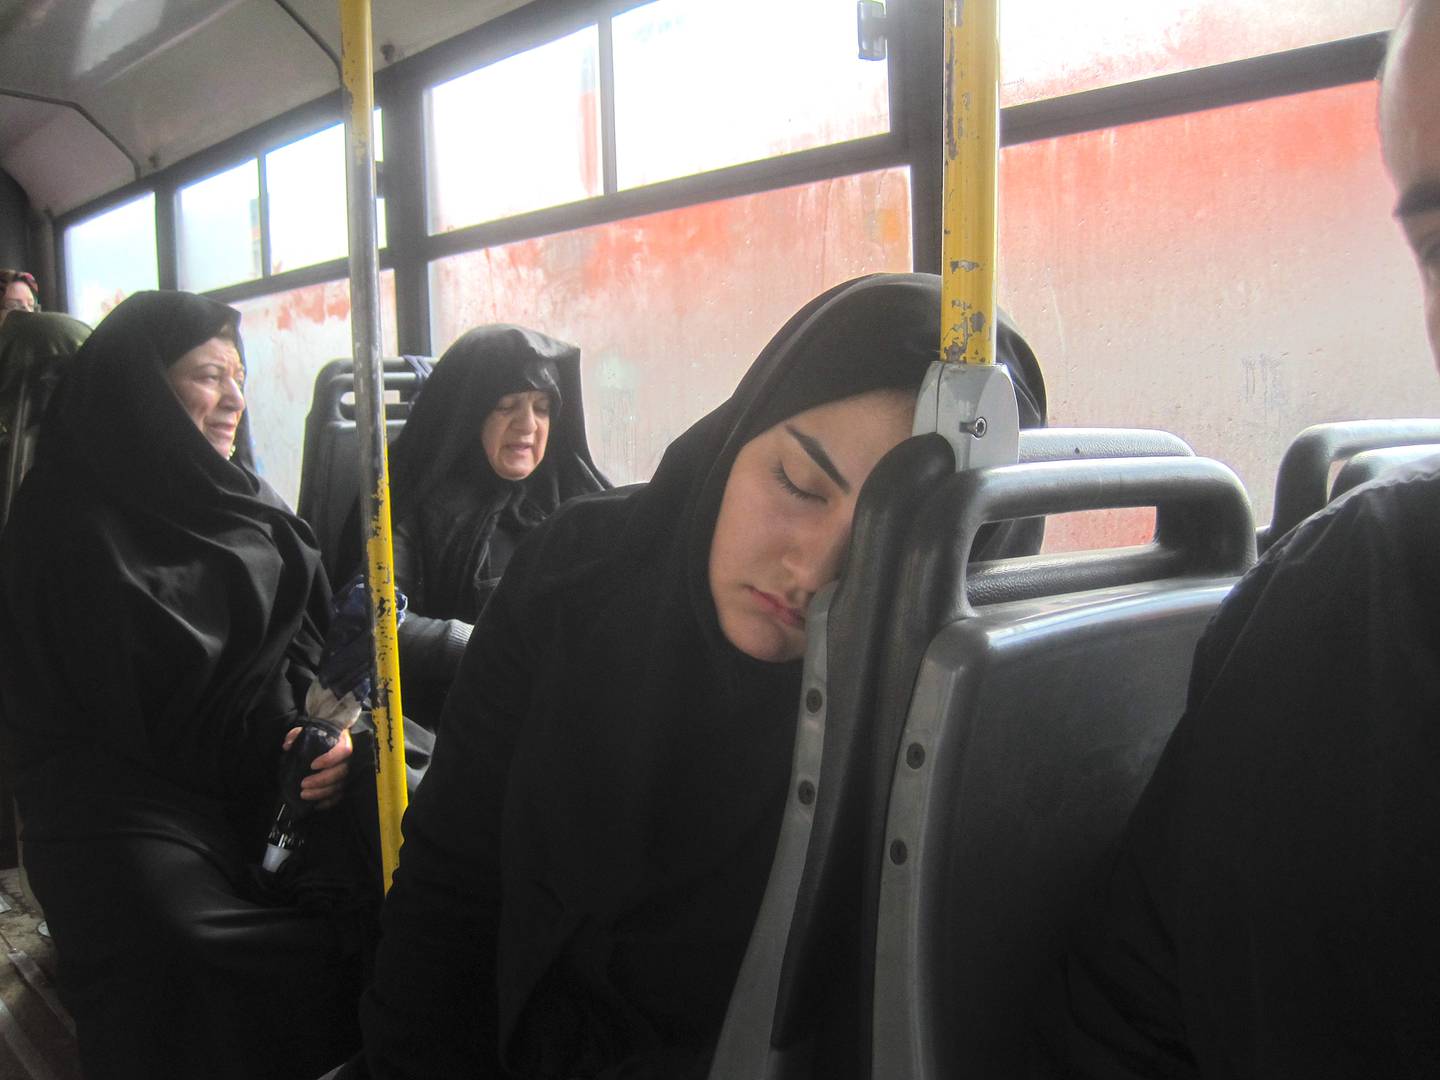 Ana Diamond pictured pre-arrest in Iran. Photo: Ana Diamond